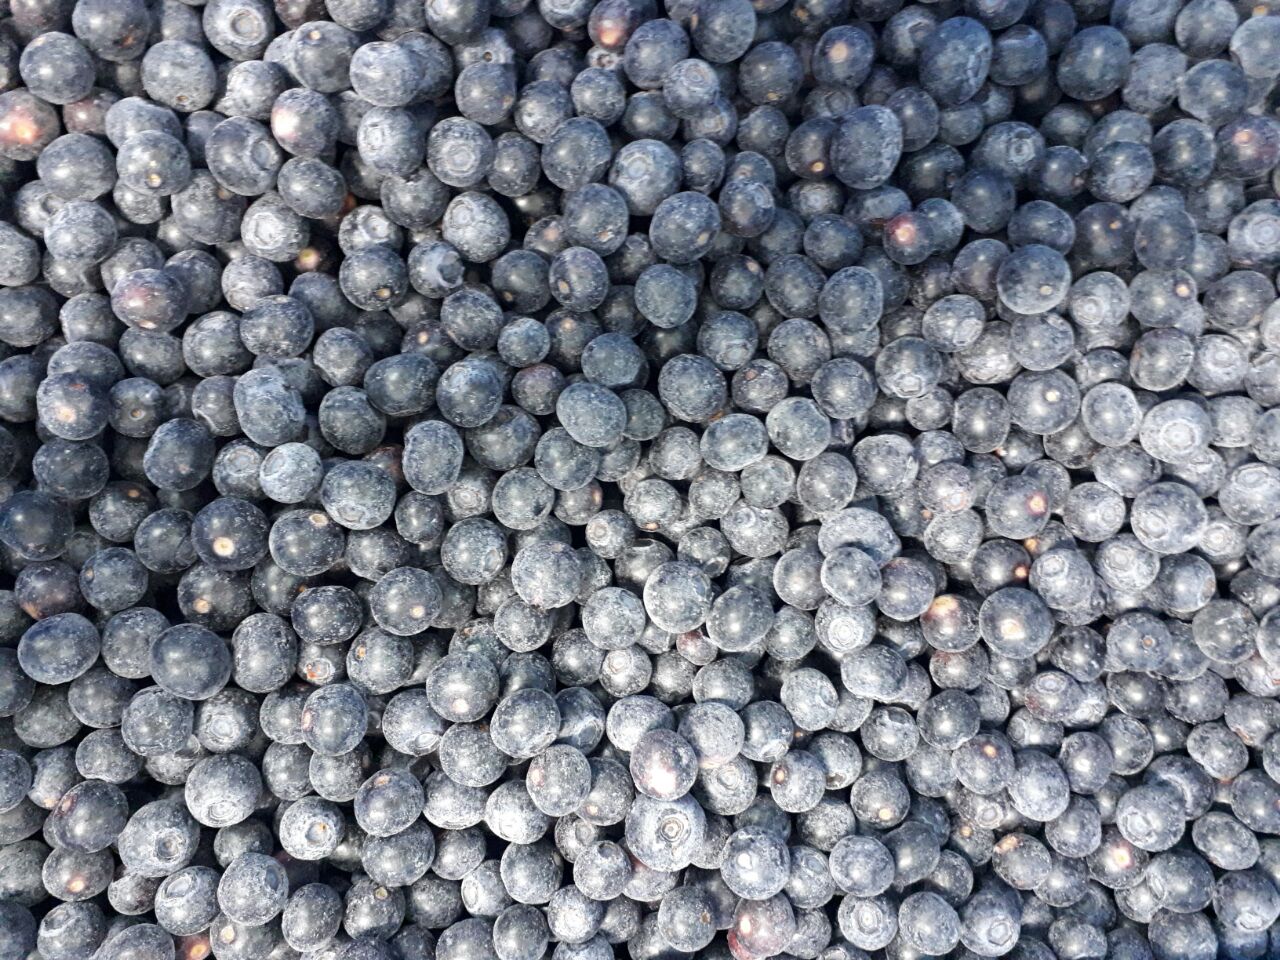 智利A级冷冻蓝莓批发 宾德利商贸（青岛）有限公司